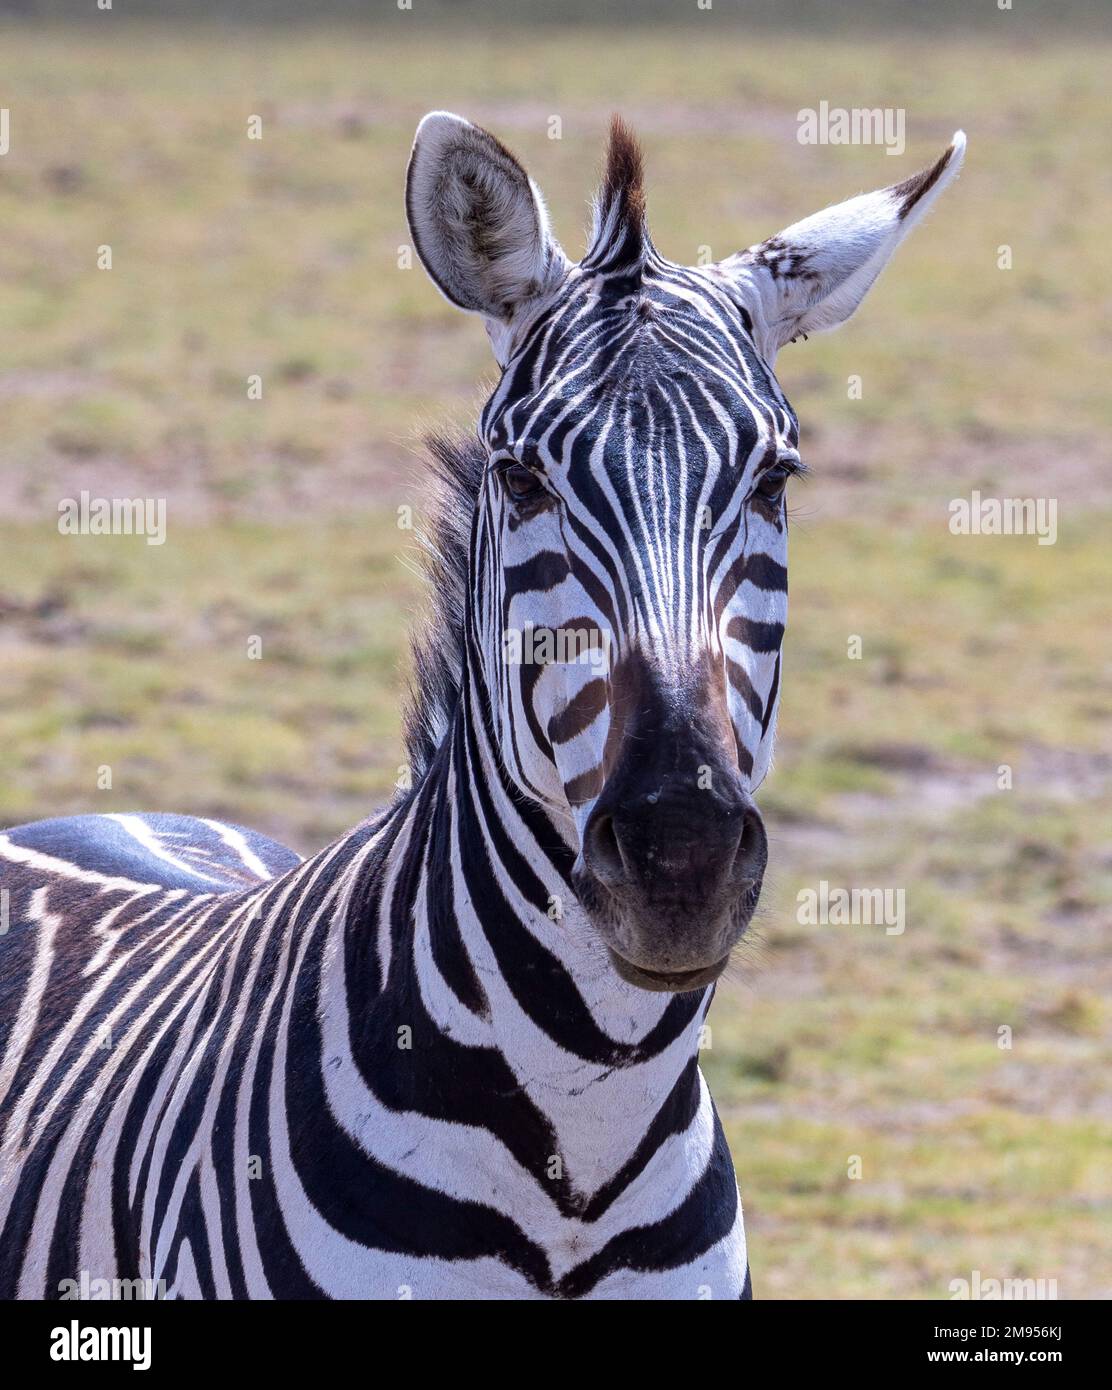 Portrait frontal de zébra, parc national d'Amboseli, Kenya Banque D'Images